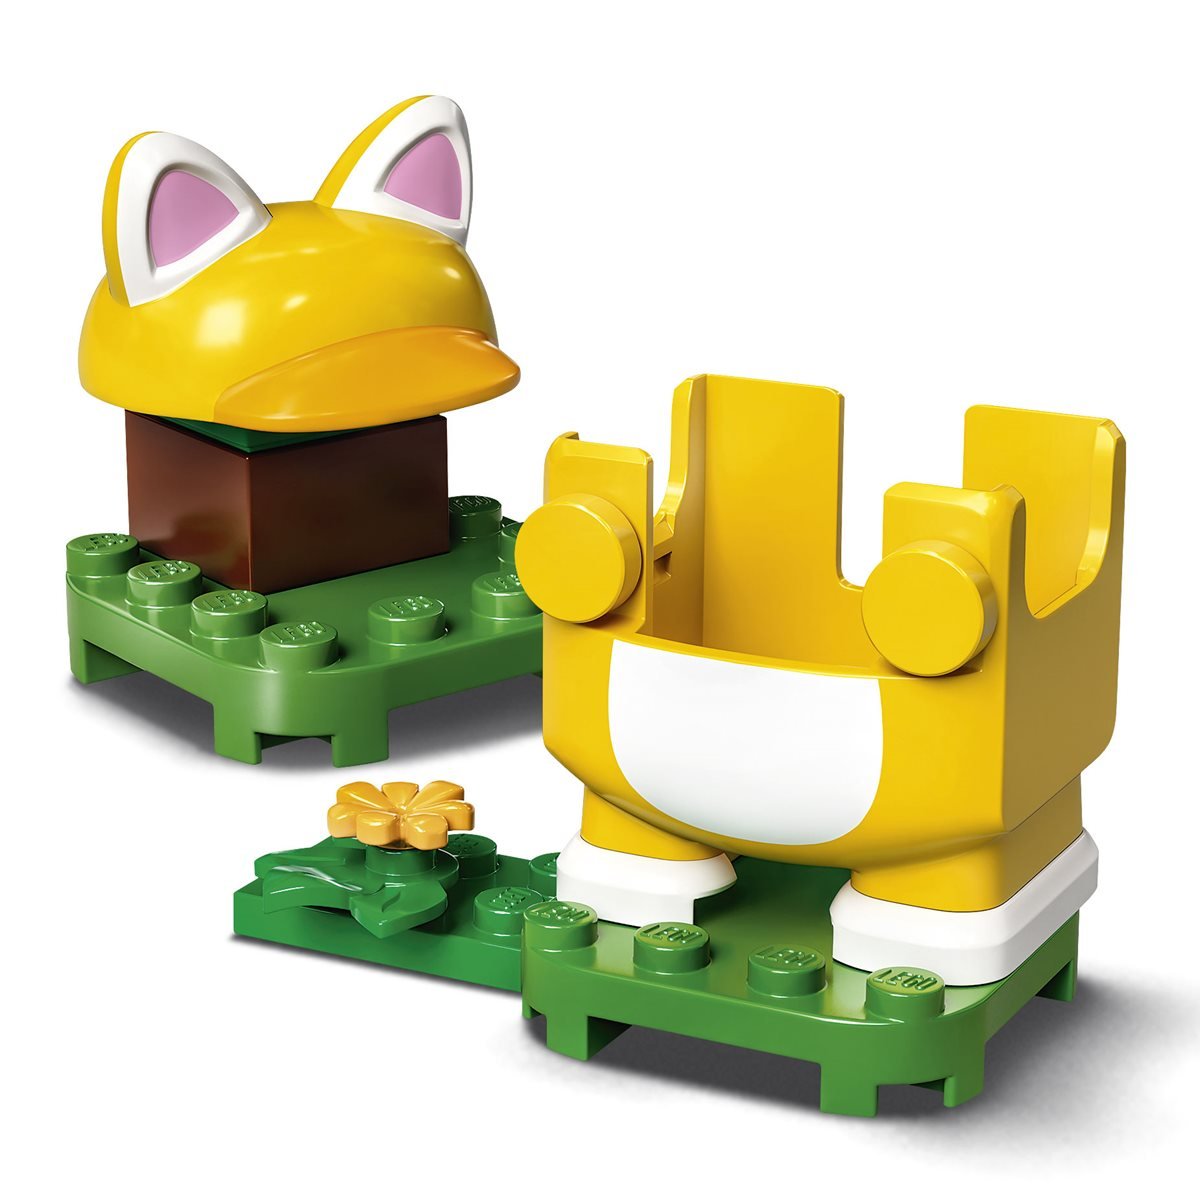 LEGO Super Mario Cat Mario Costume 71372 Building Kit Creative